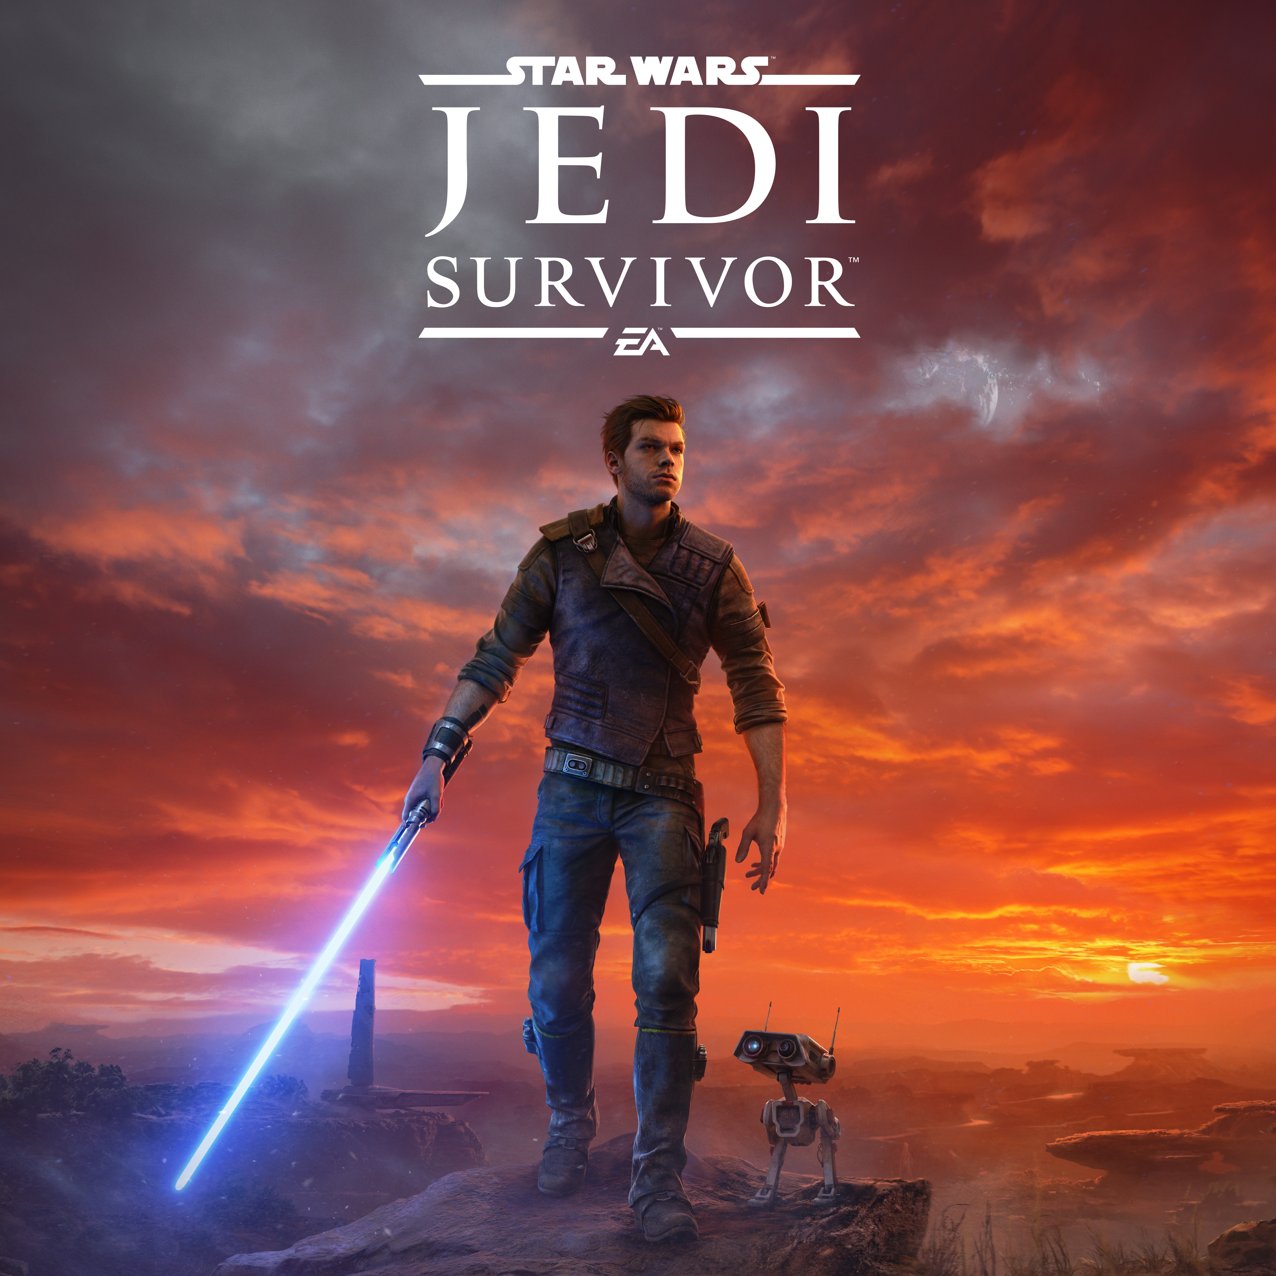 Star Wars Jedi: Survivor, que llegará a PlayStation 5, Xbox Series X|S y PC el 28 de abril.